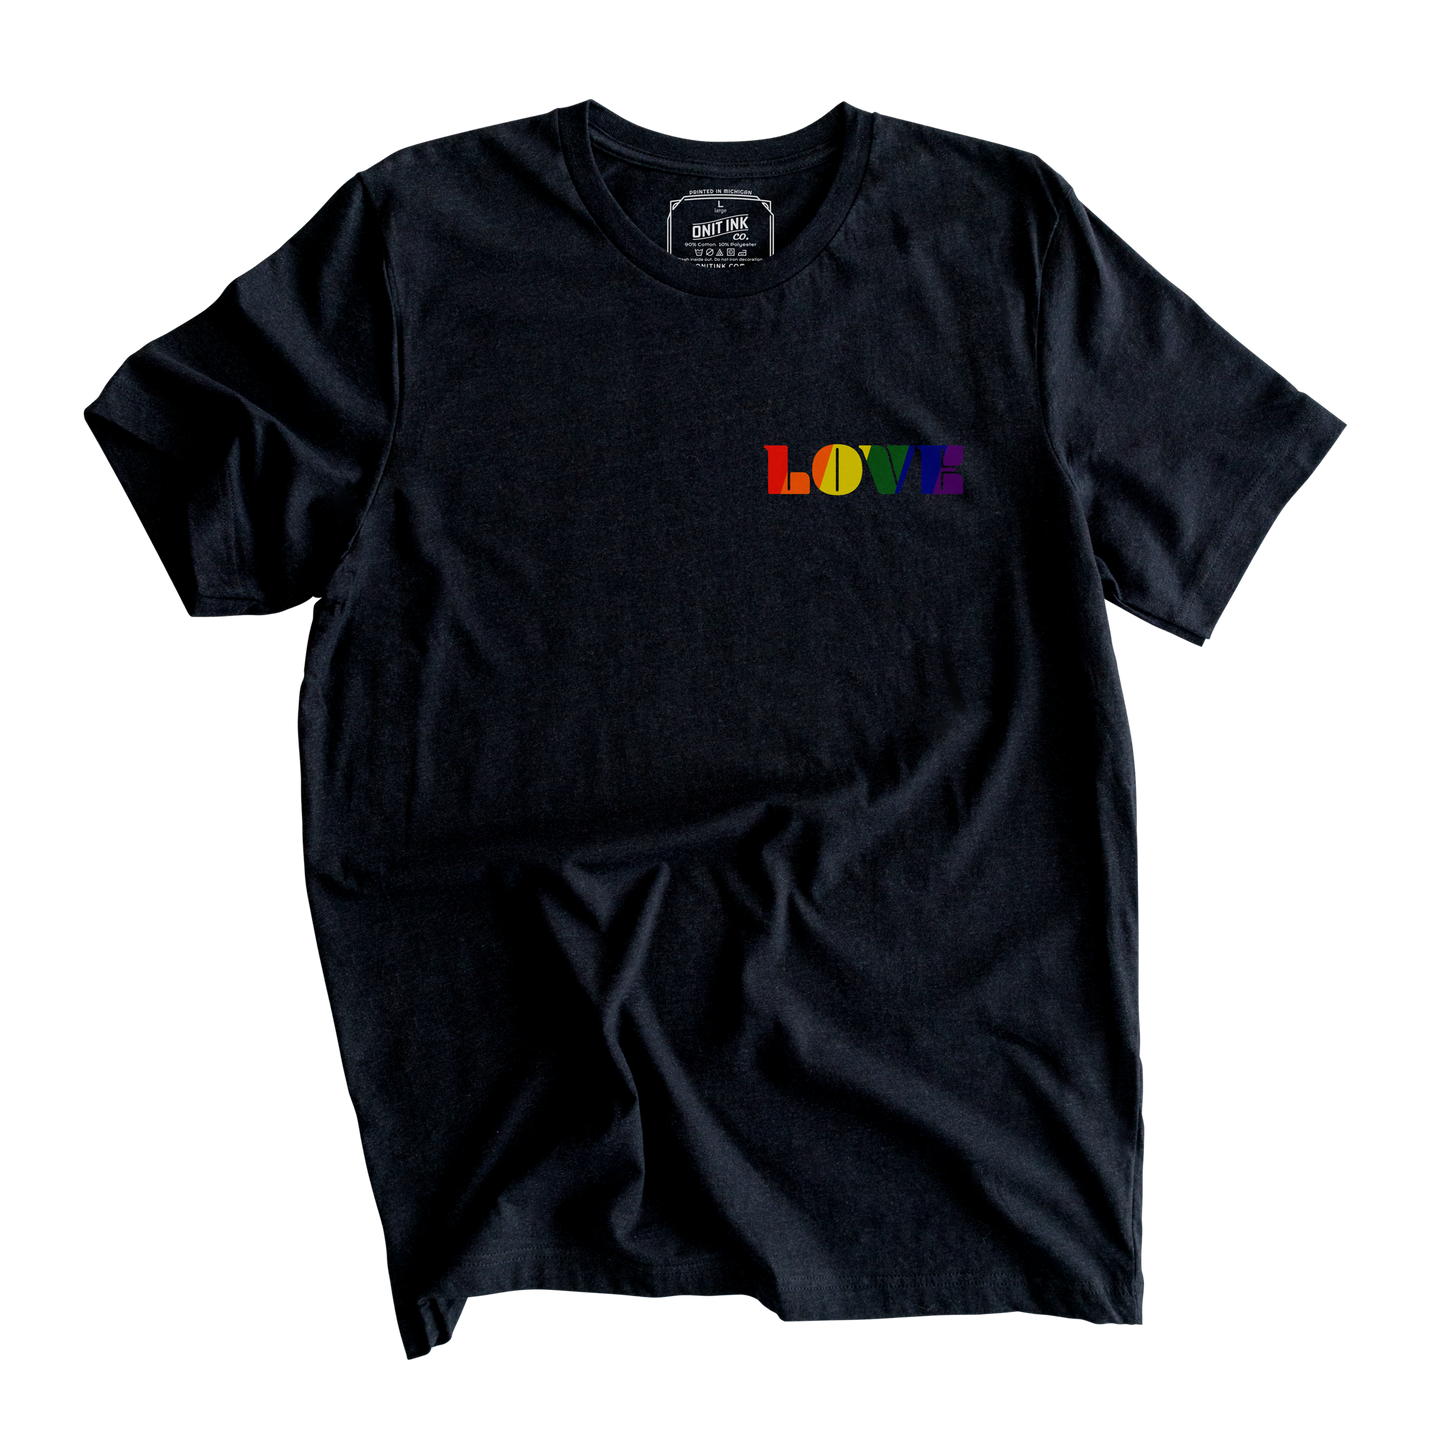 A Little LOVE T-Shirt